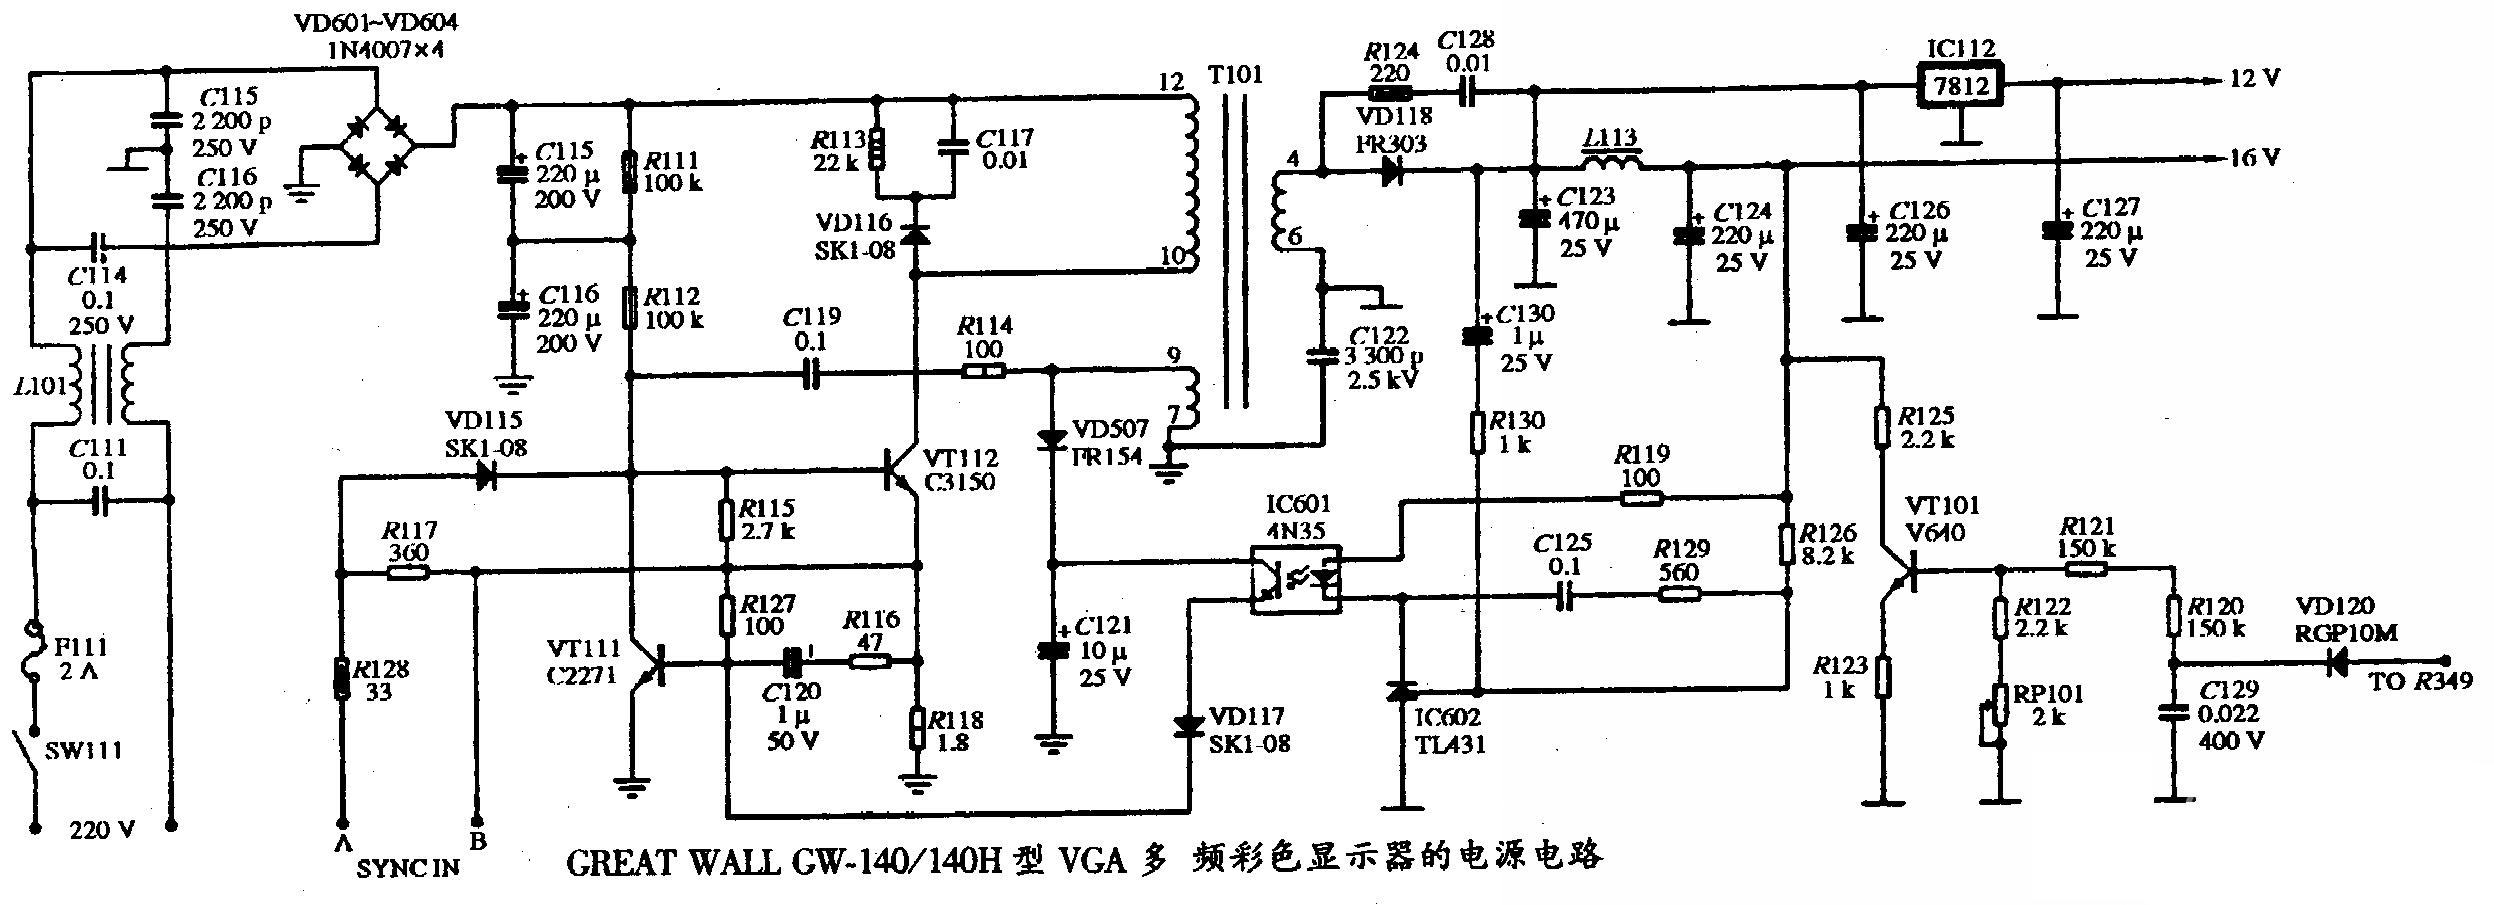 GREAT WALL GW-140/140H型VGA多频彩色显示器的电源电路